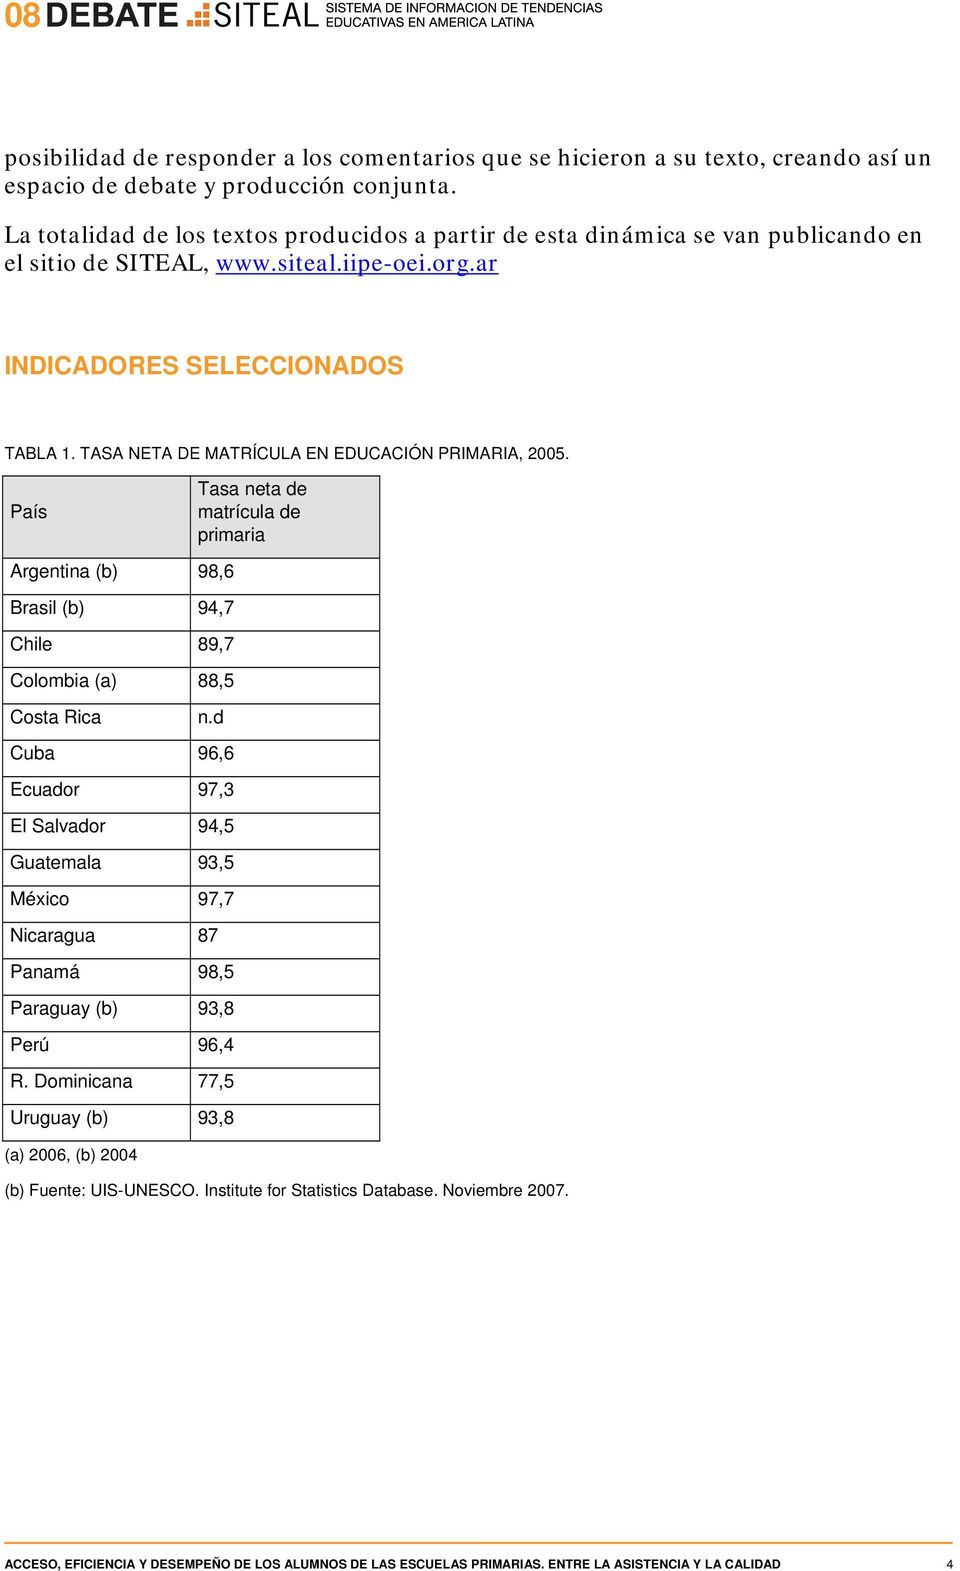 TASA NETA DE MATRÍCULA EN EDUCACIÓN PRIMARIA, 2005. País Tasa neta de matrícula de primaria Argentina (b) 98,6 Brasil (b) 94,7 Chile 89,7 Colombia (a) 88,5 Costa Rica n.